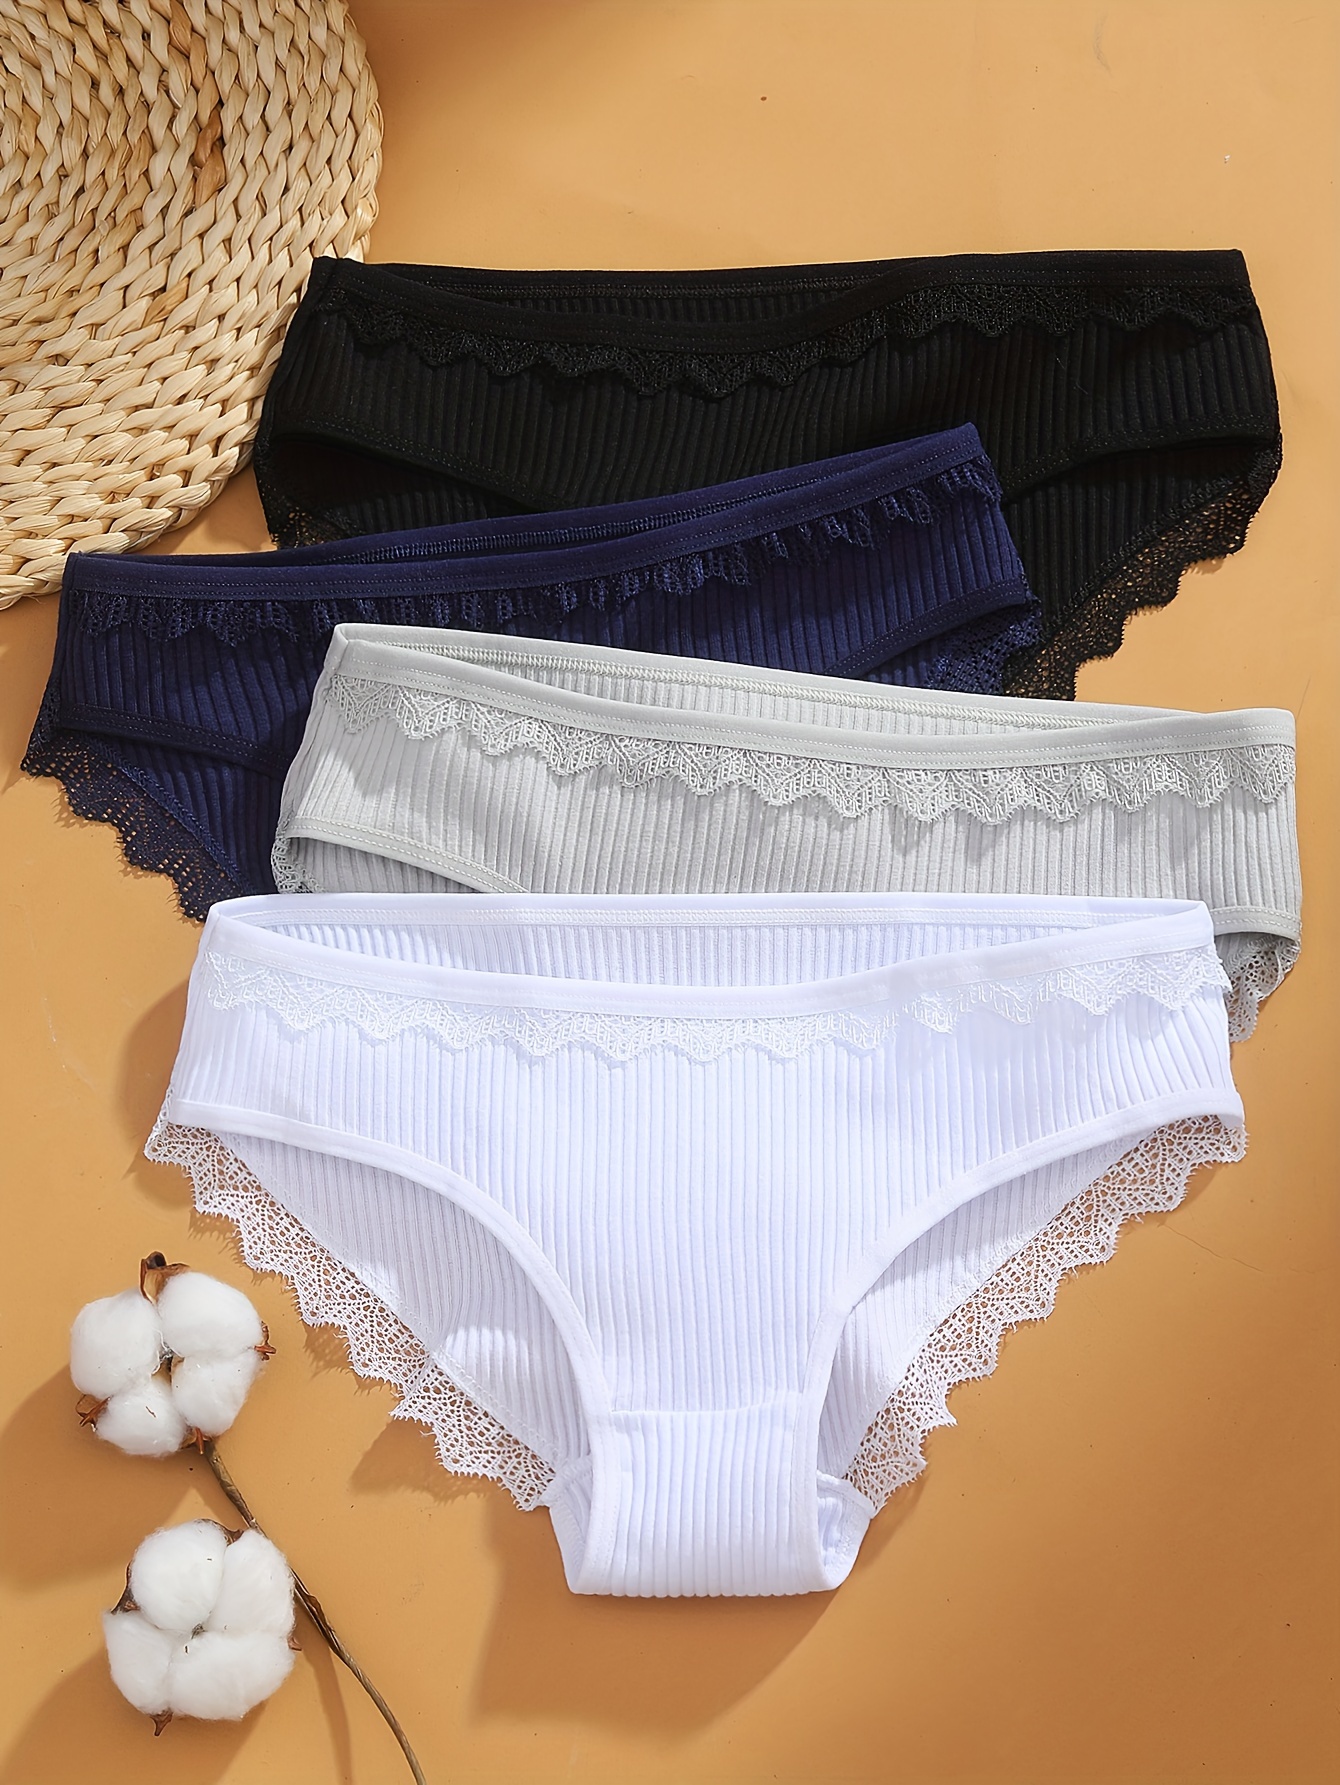 Cotton Underwear, Cotton Lingerie, Lace Underwear, Cotton Panties